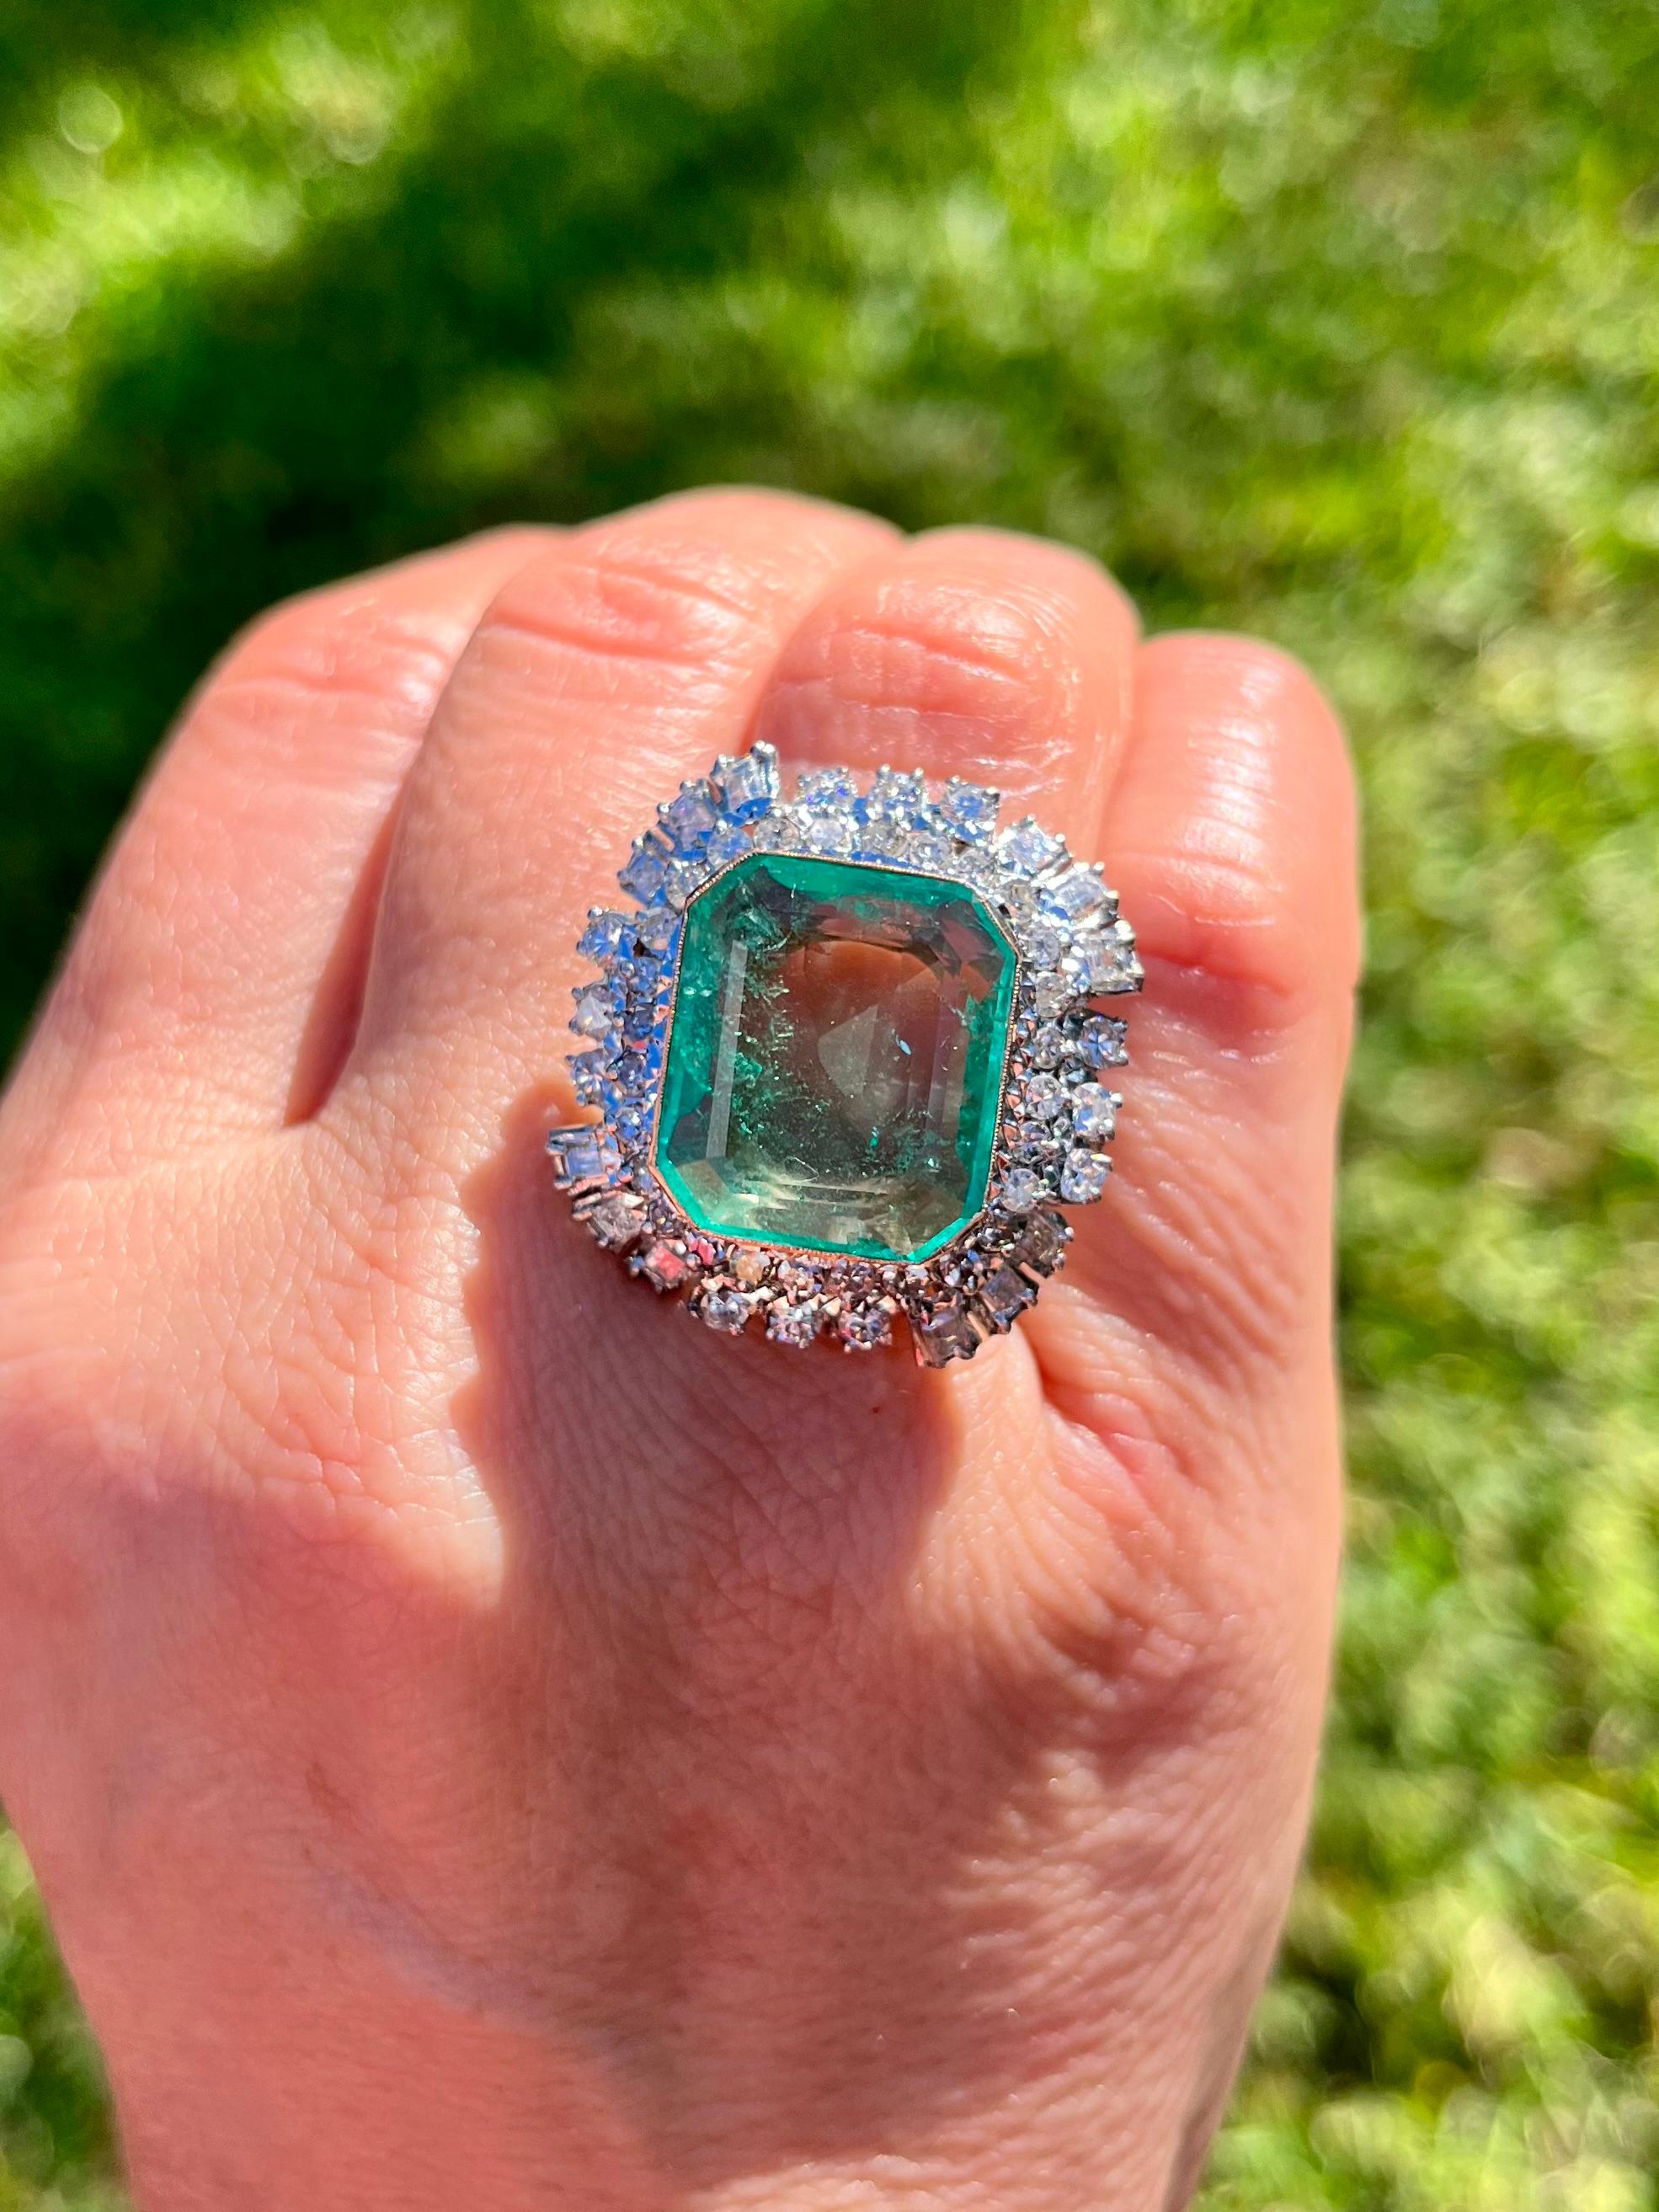 12 carat emerald price